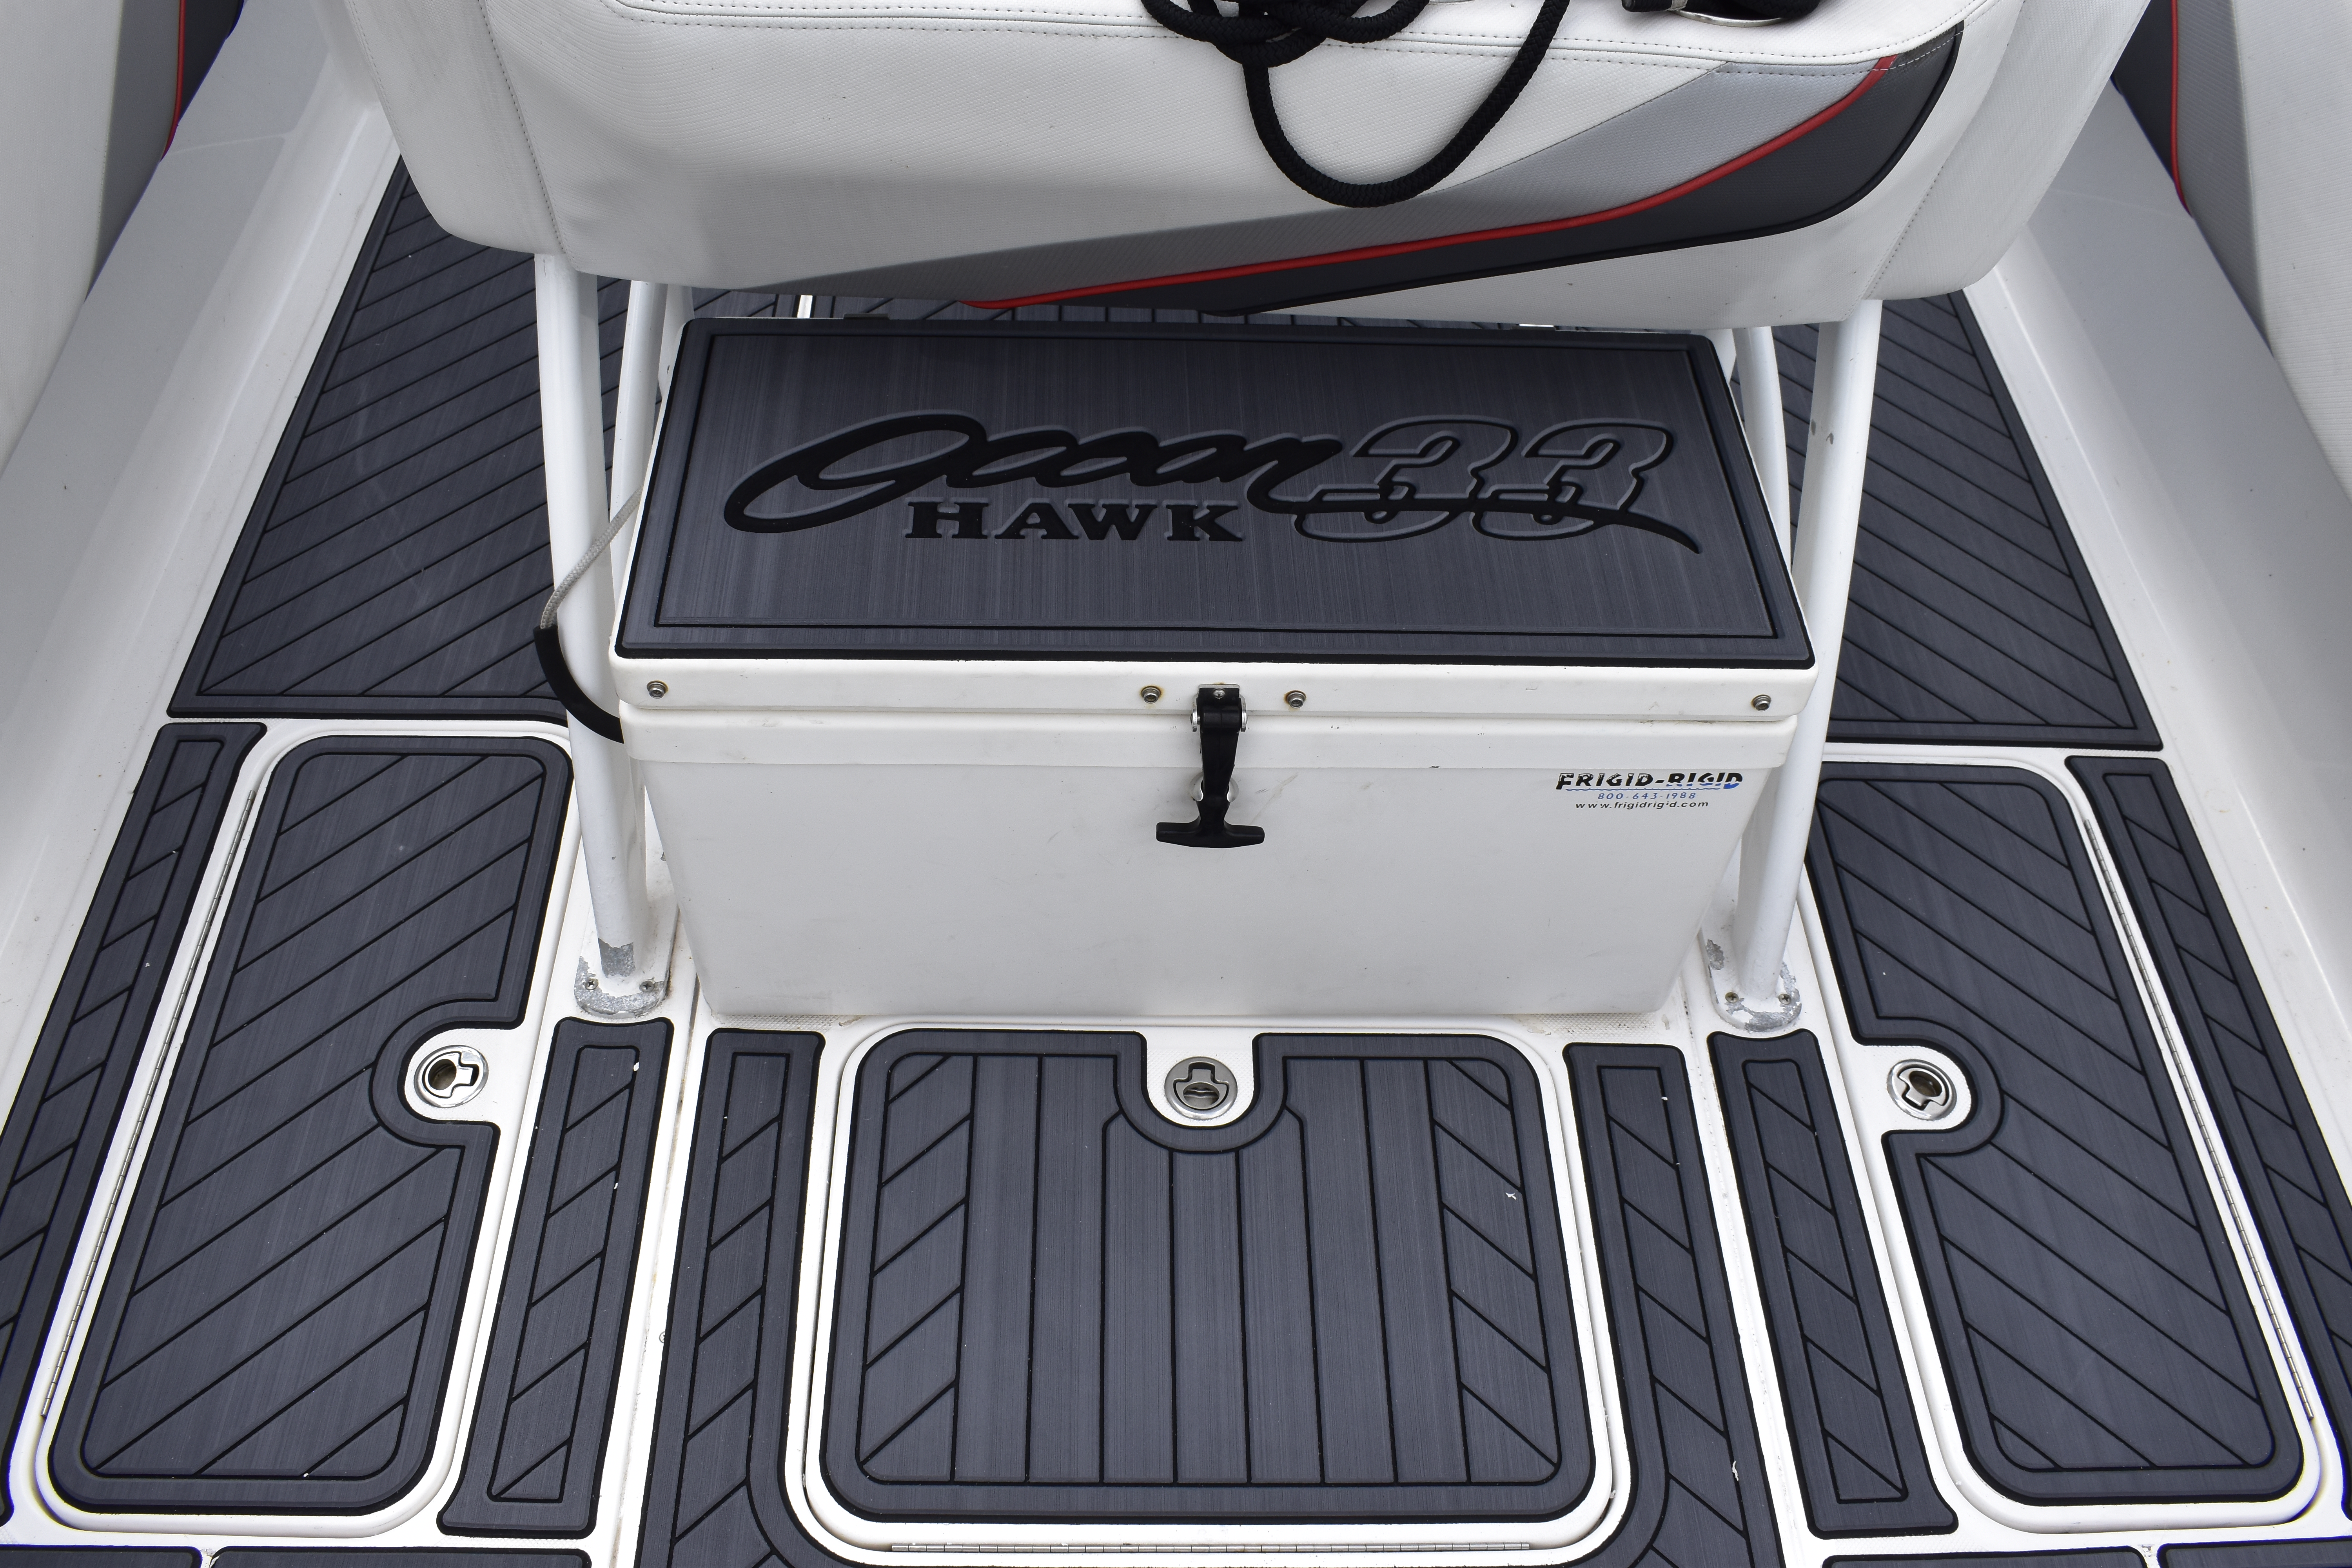 ocean hawk powerboat, orthodek flooring for boat, custom marine floor covering